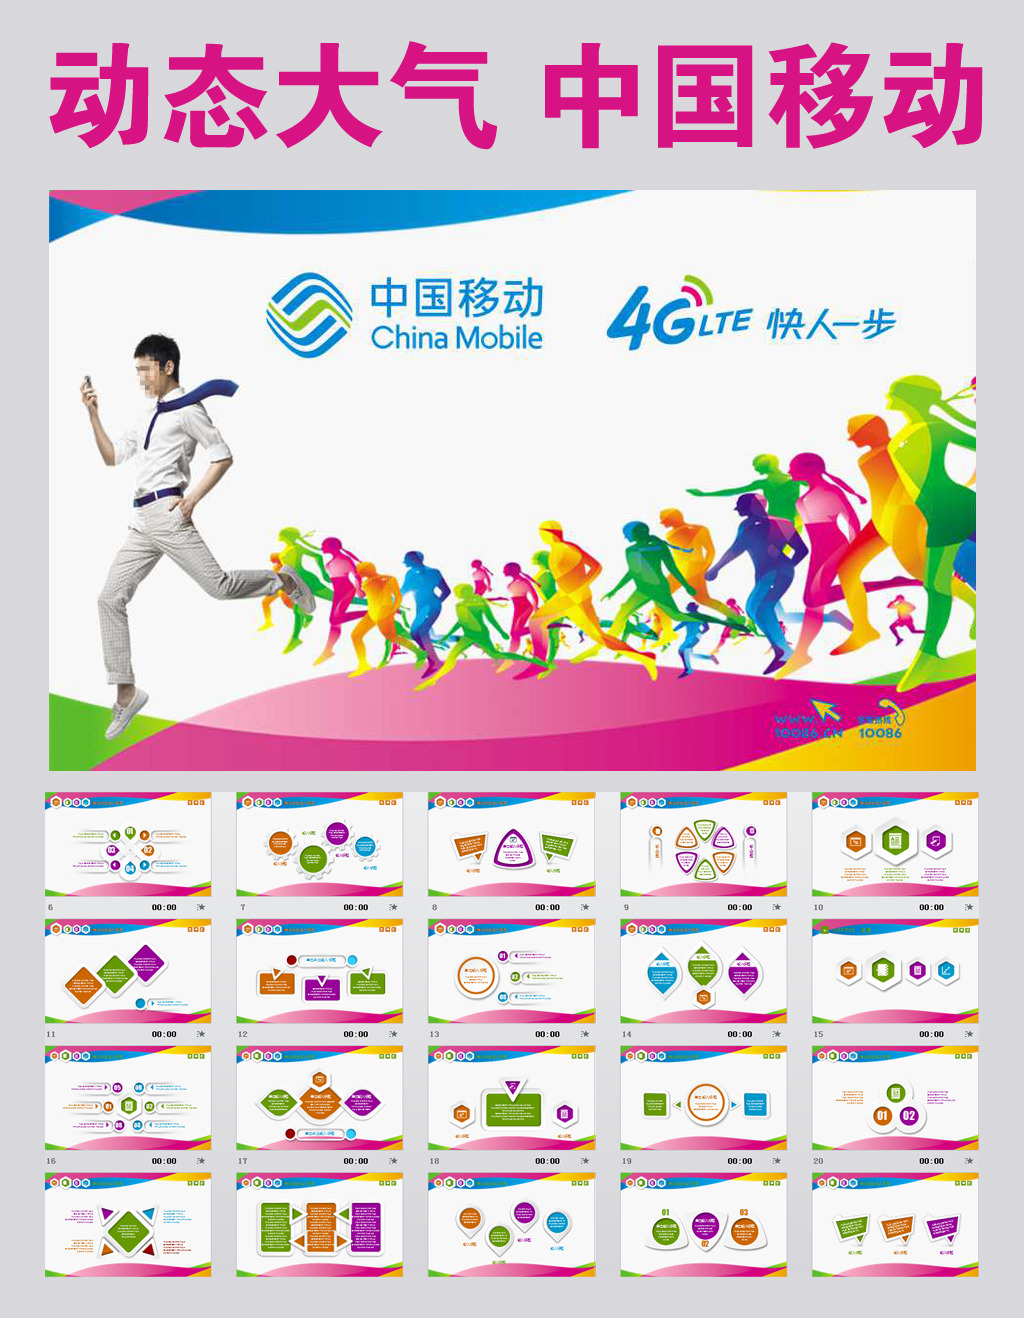 中国移动通信4G业绩报告会议幻灯片PPT模板